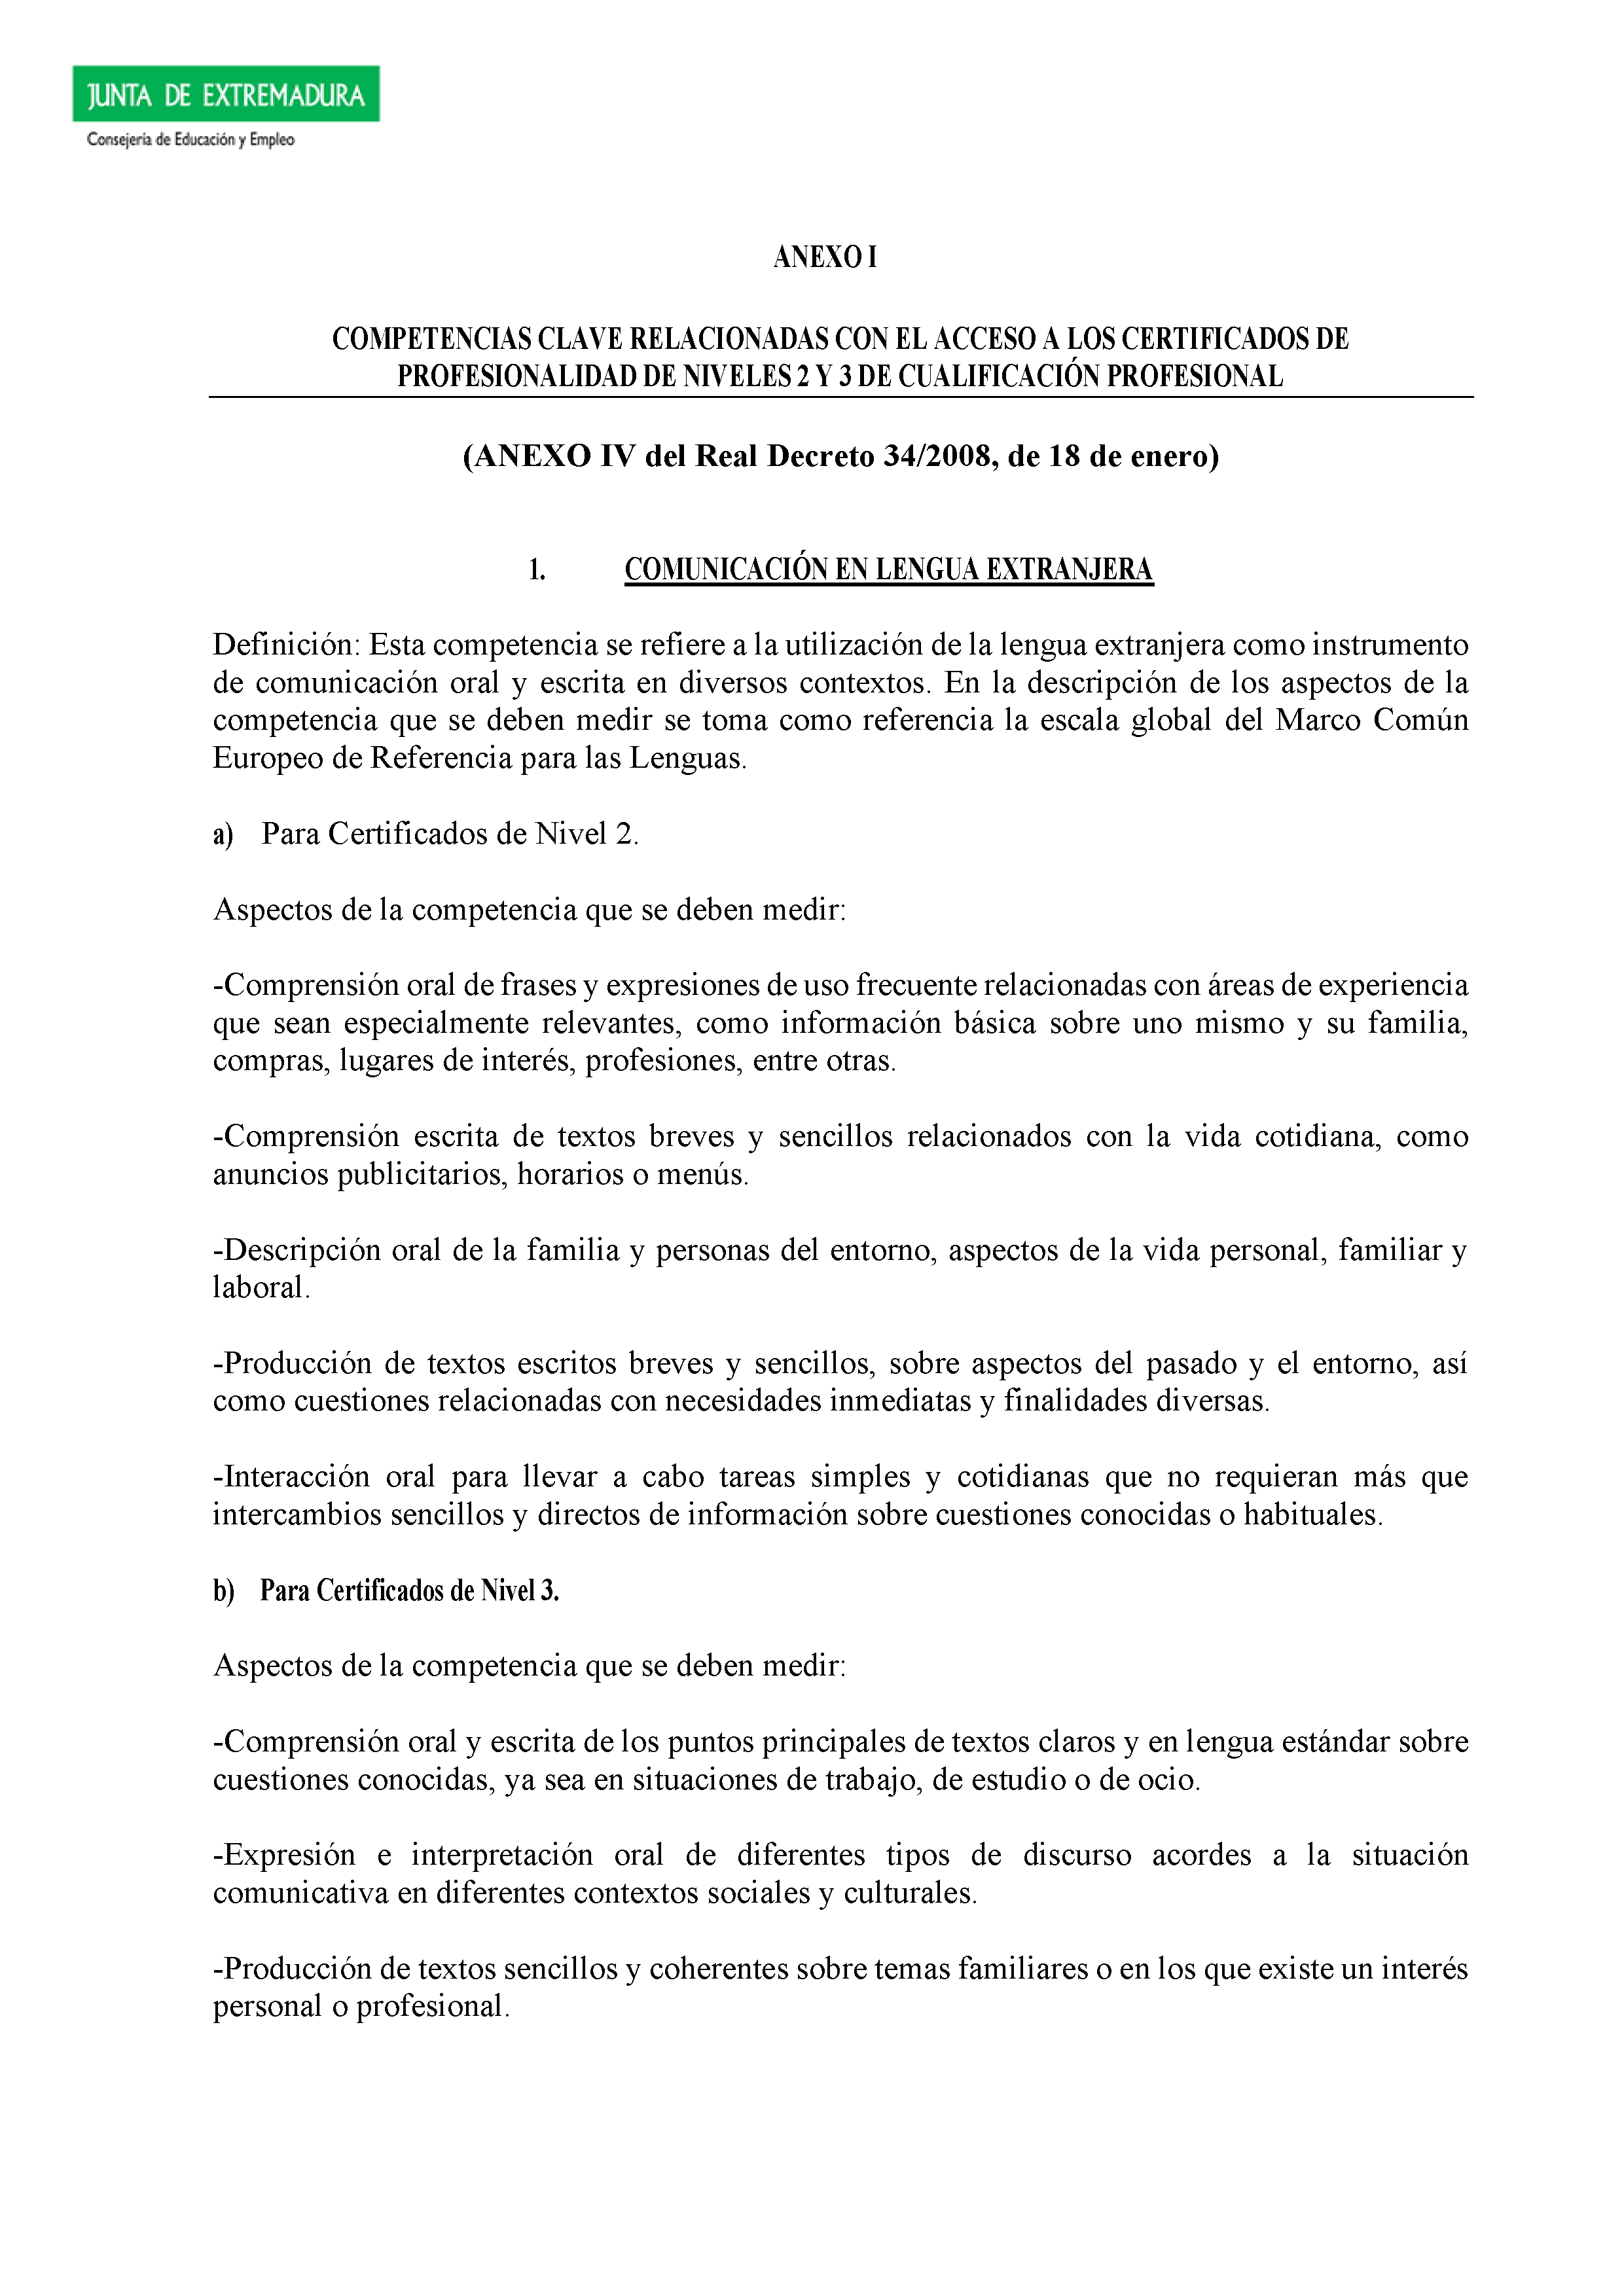 ANEXO I - COMPETENCIAS CLAVE RELACIONADAS CON EL ACCESO A LOS CERTIFICADOS DE PROFESIONALIDAD DE NIVELES 2 Y 3 DE CUALIFICACIÓN PROFESIONAL Pag 1